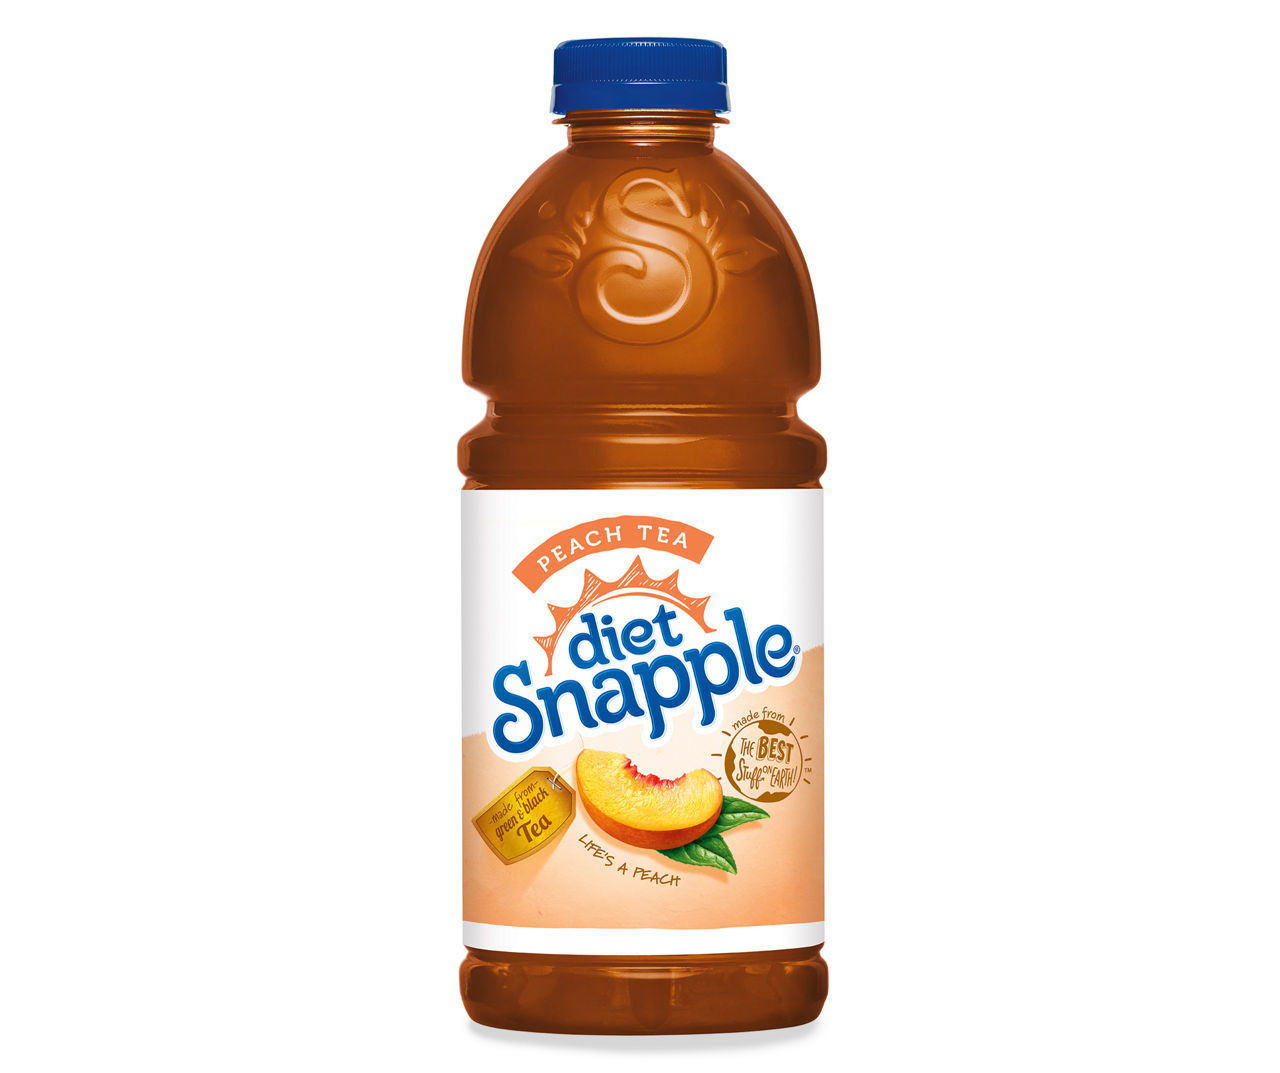 Snapple Diet Snapple Peach Tea, 32 Fl Oz Bottle